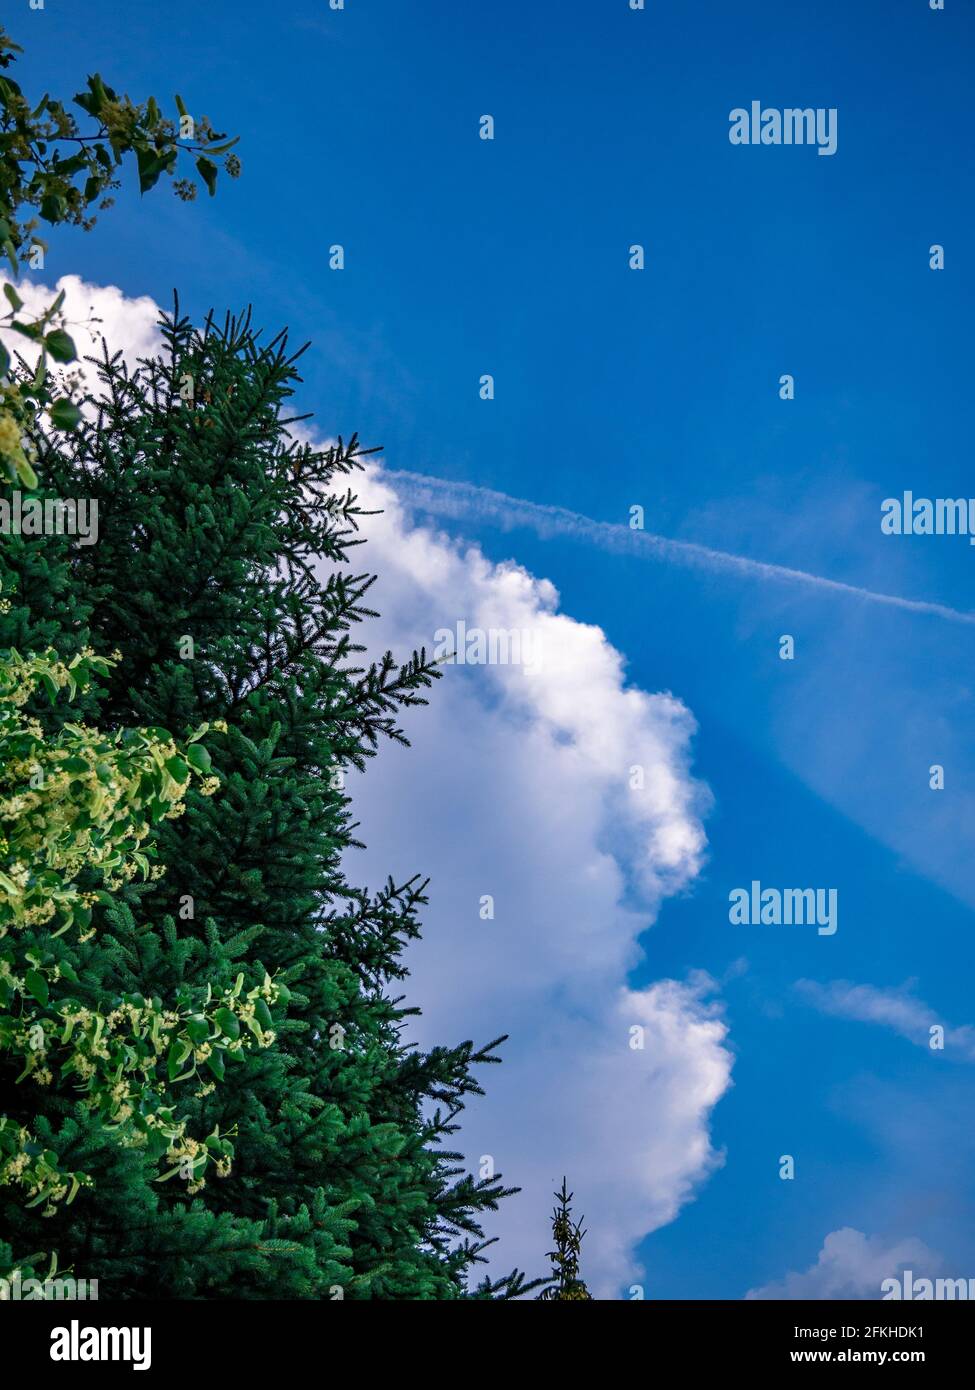 Massive Wolke über den Bäumen am blauen Himmel Stockfoto